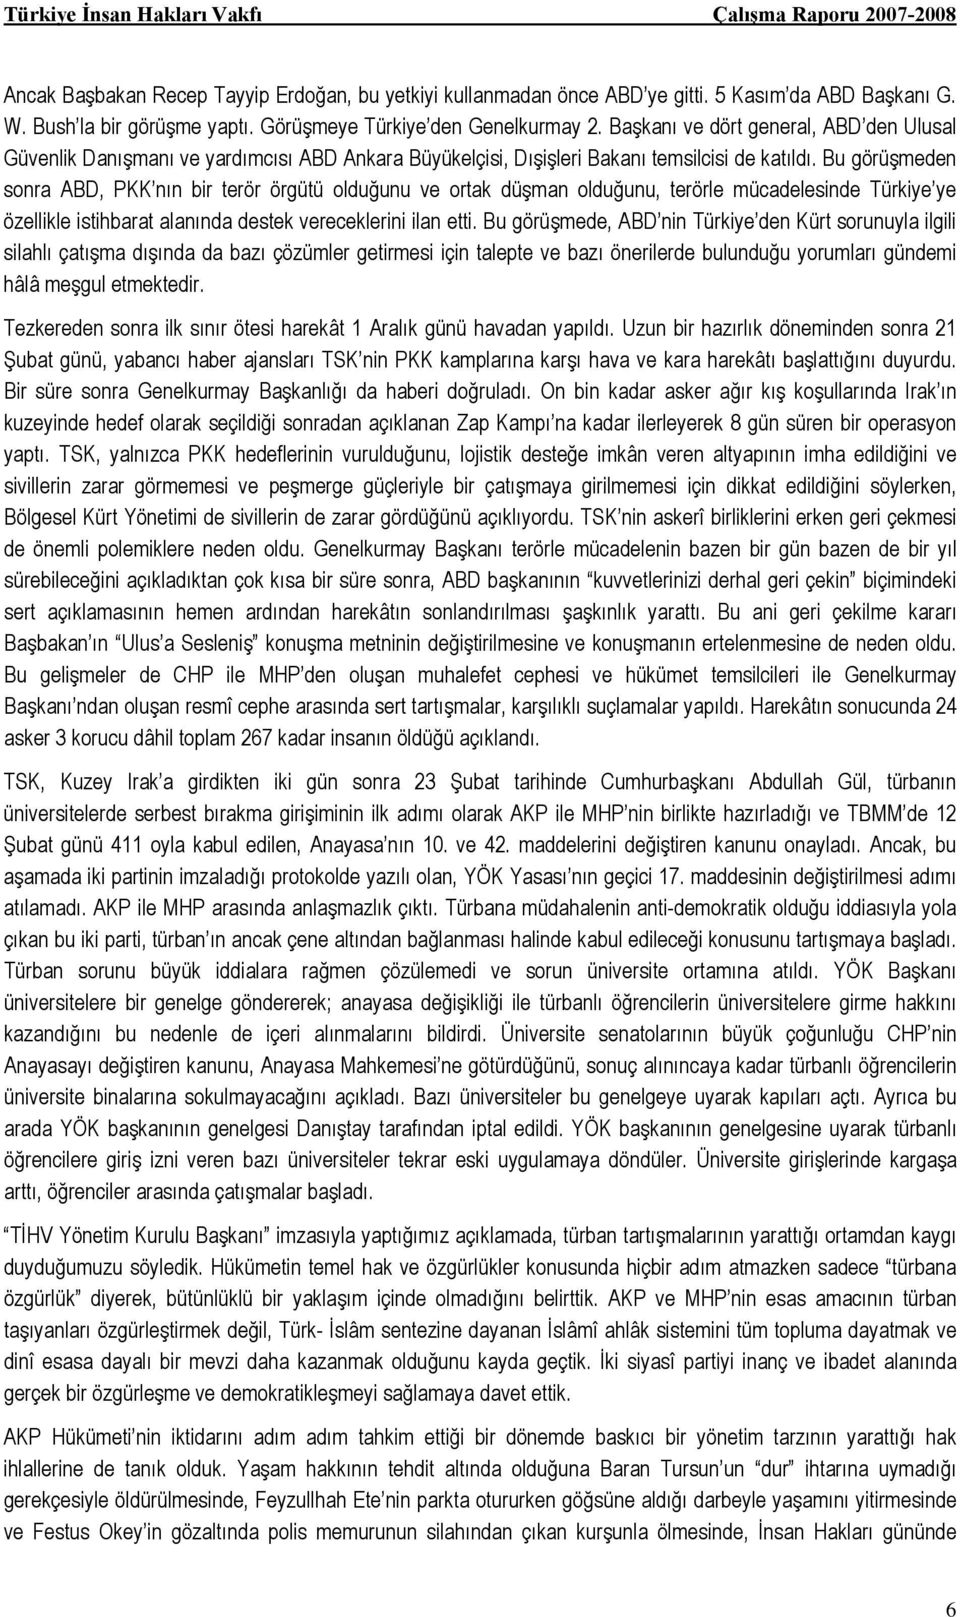 Bu görüşmeden sonra ABD, PKK nın bir terör örgütü olduğunu ve ortak düşman olduğunu, terörle mücadelesinde Türkiye ye özellikle istihbarat alanında destek vereceklerini ilan etti.